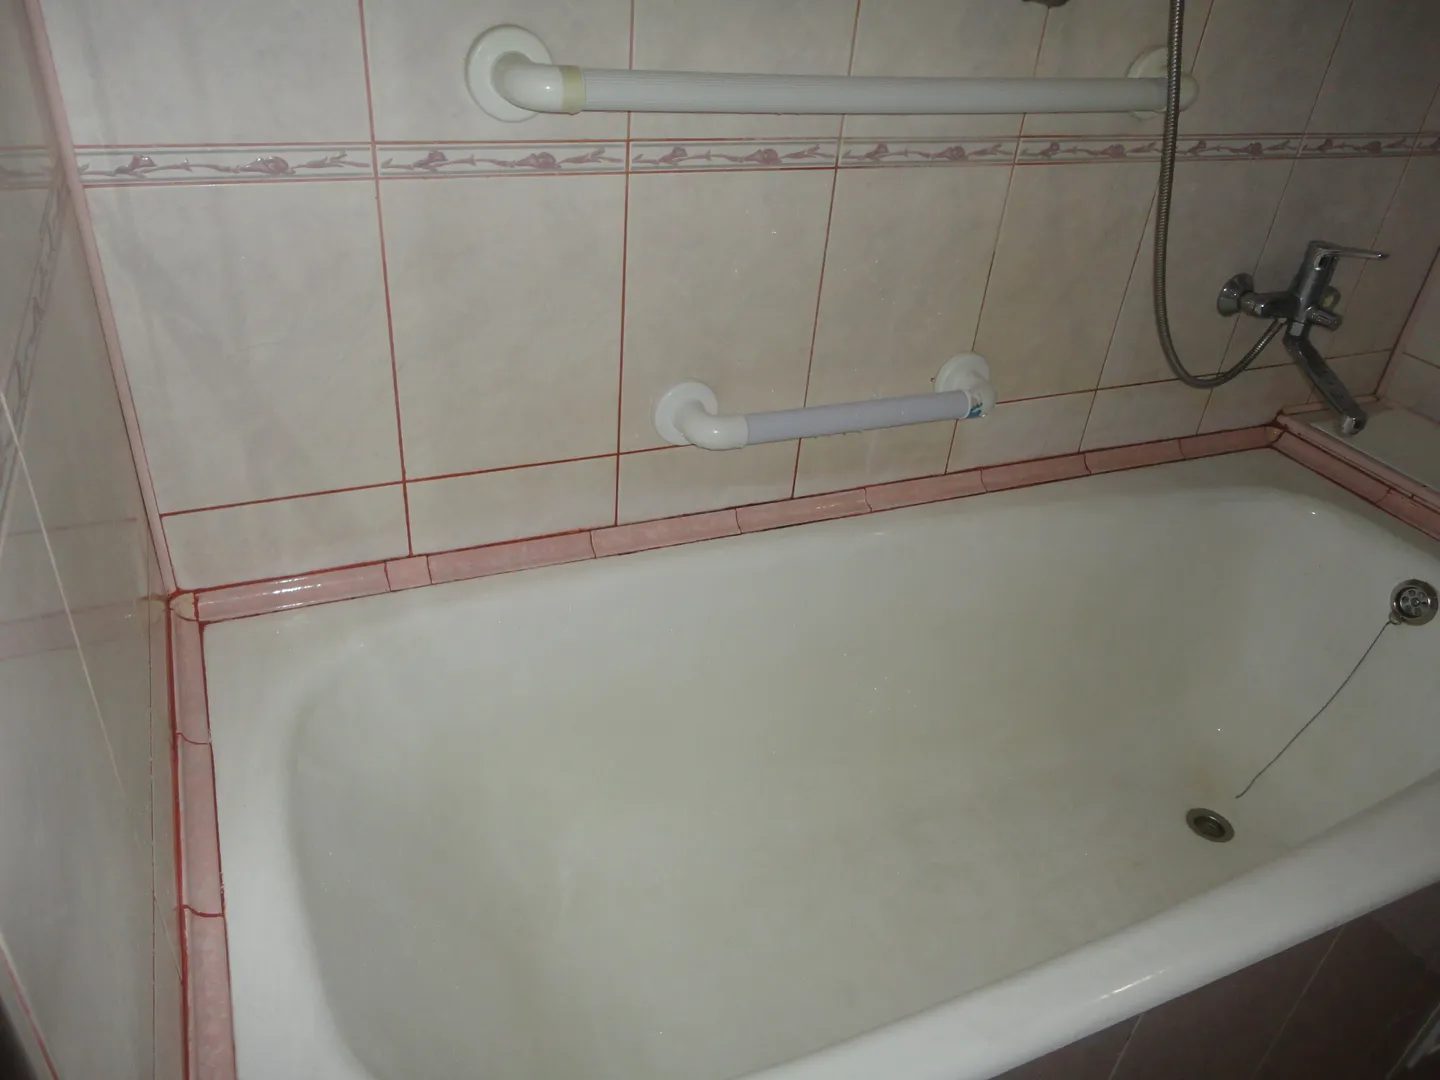 Ванная комната с розовой керамической плиткой, современной сантехникой, очень чистая и большая.